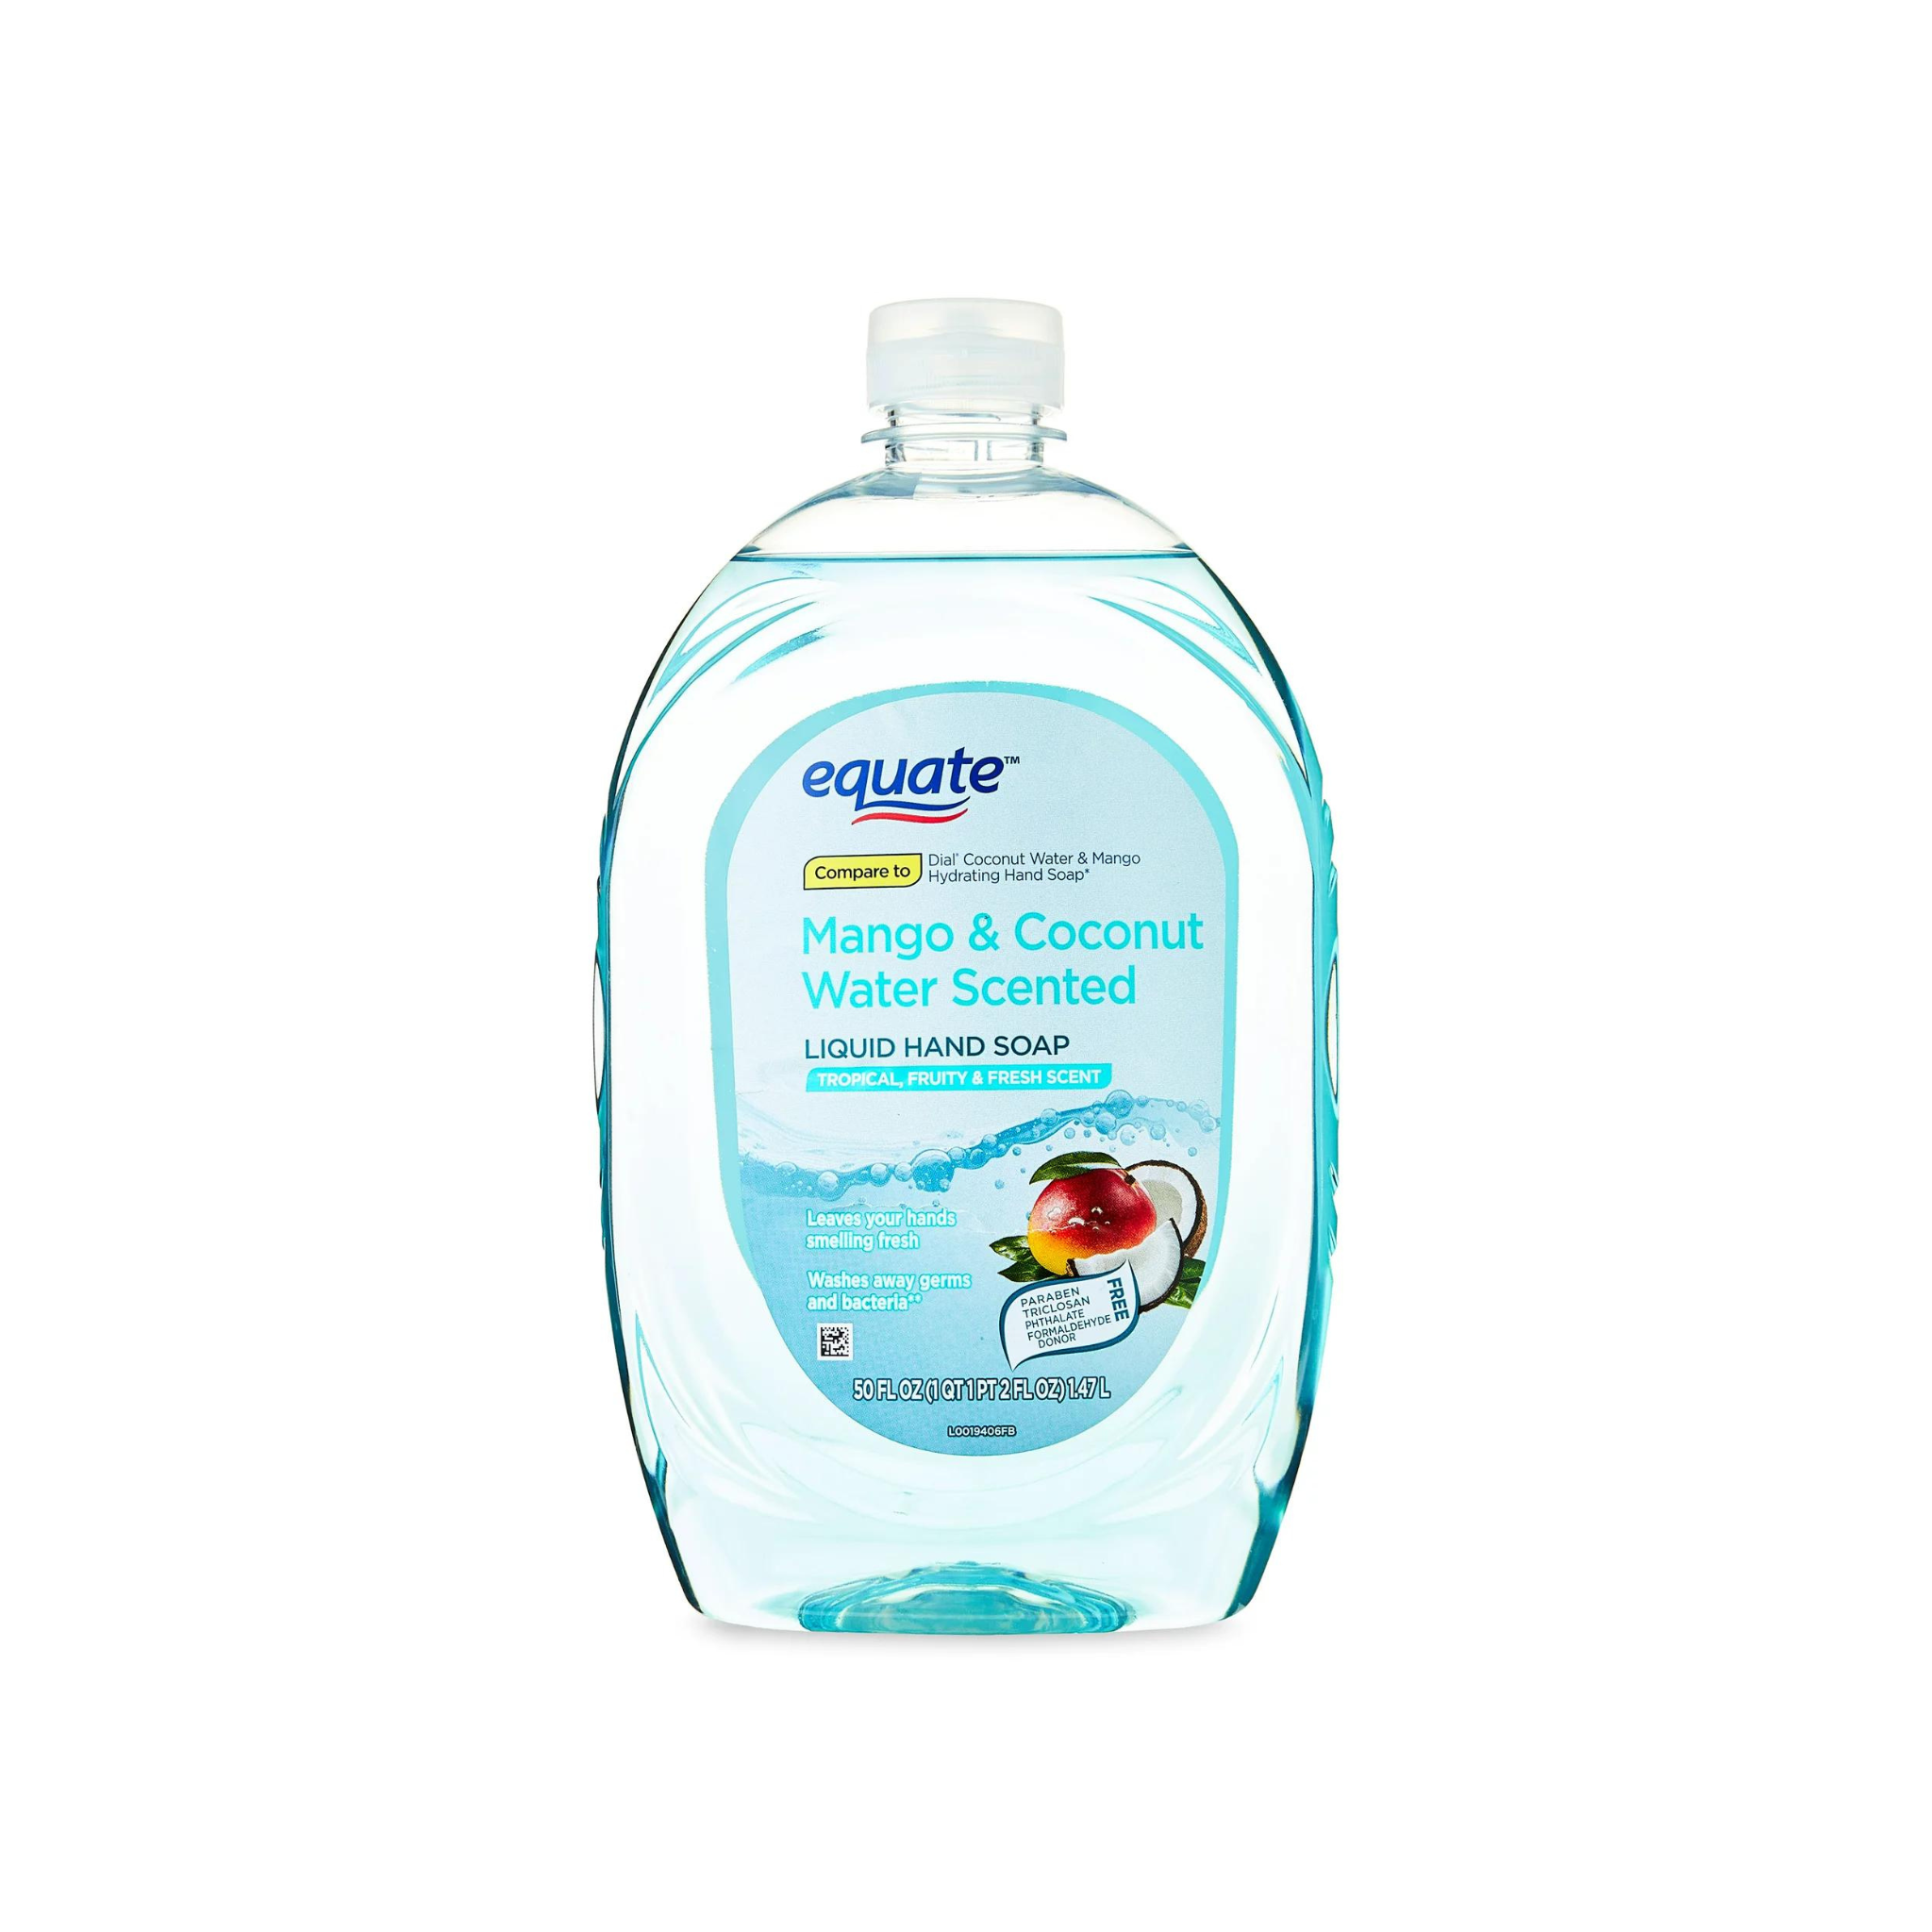 50-oz Equate Liquid Hand Soap Refill